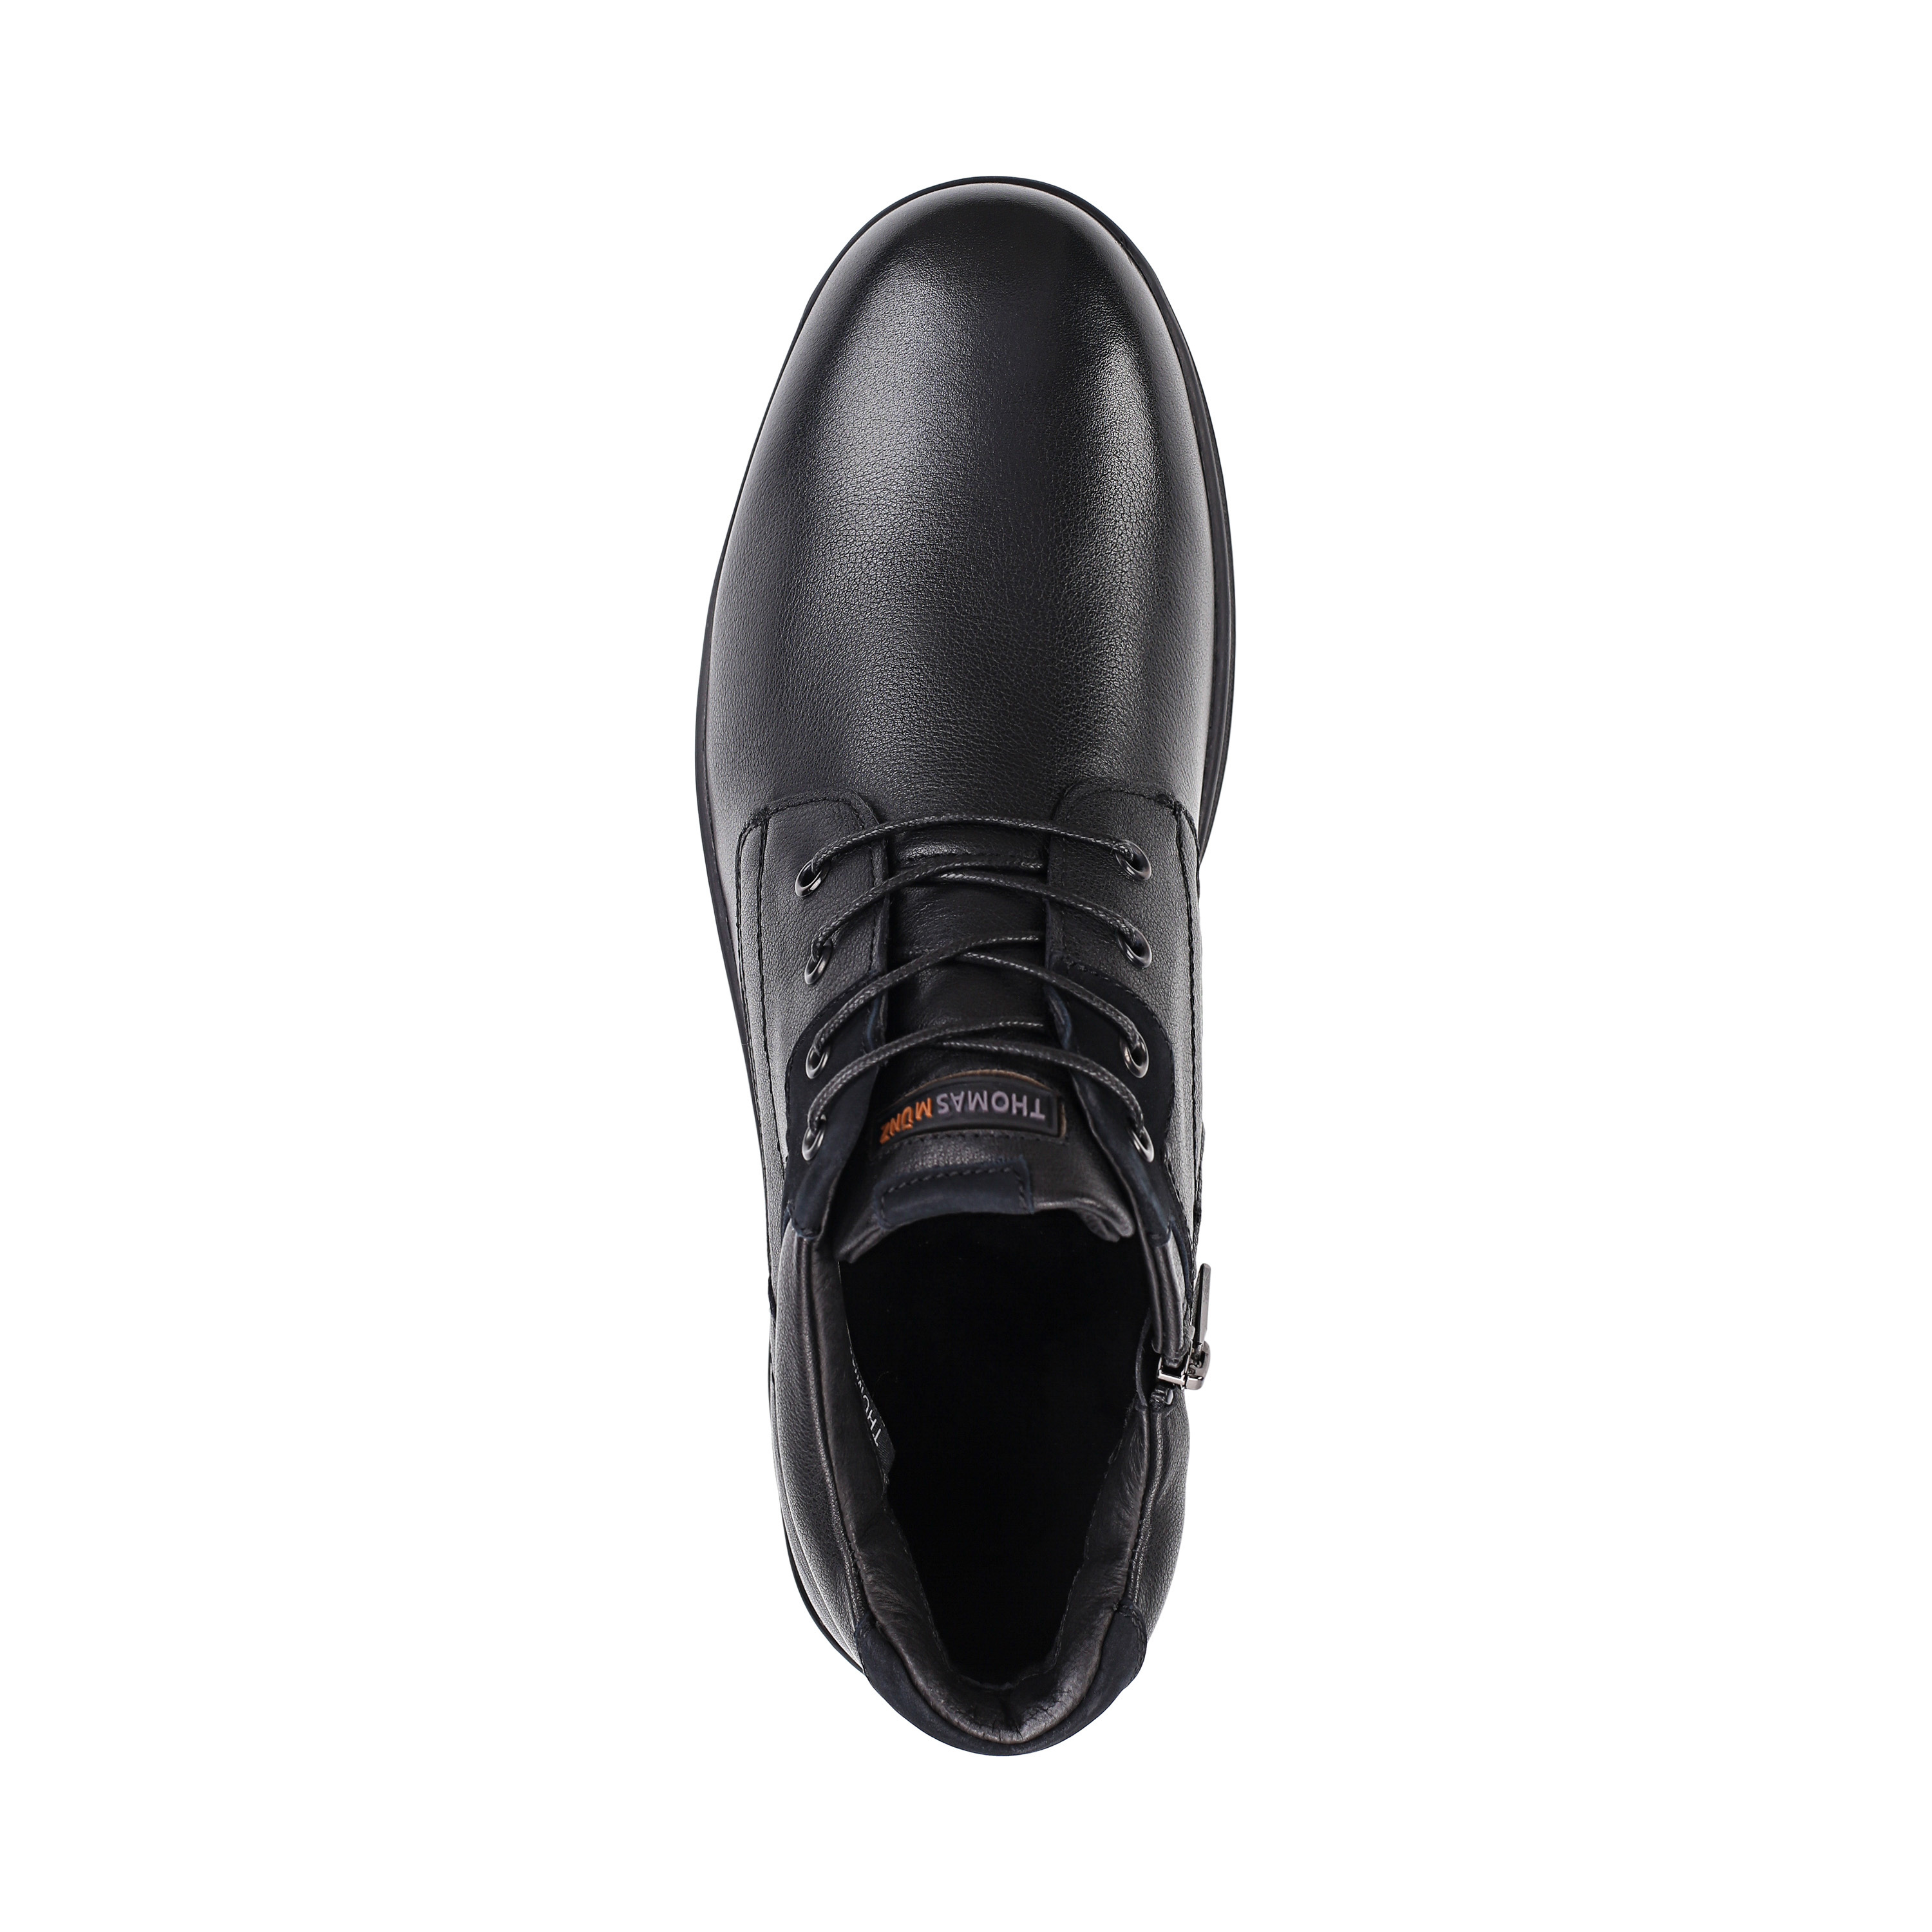 Ботинки Thomas Munz 104-158C-2102 104-158C-2102, цвет черный, размер 40 дерби - фото 5